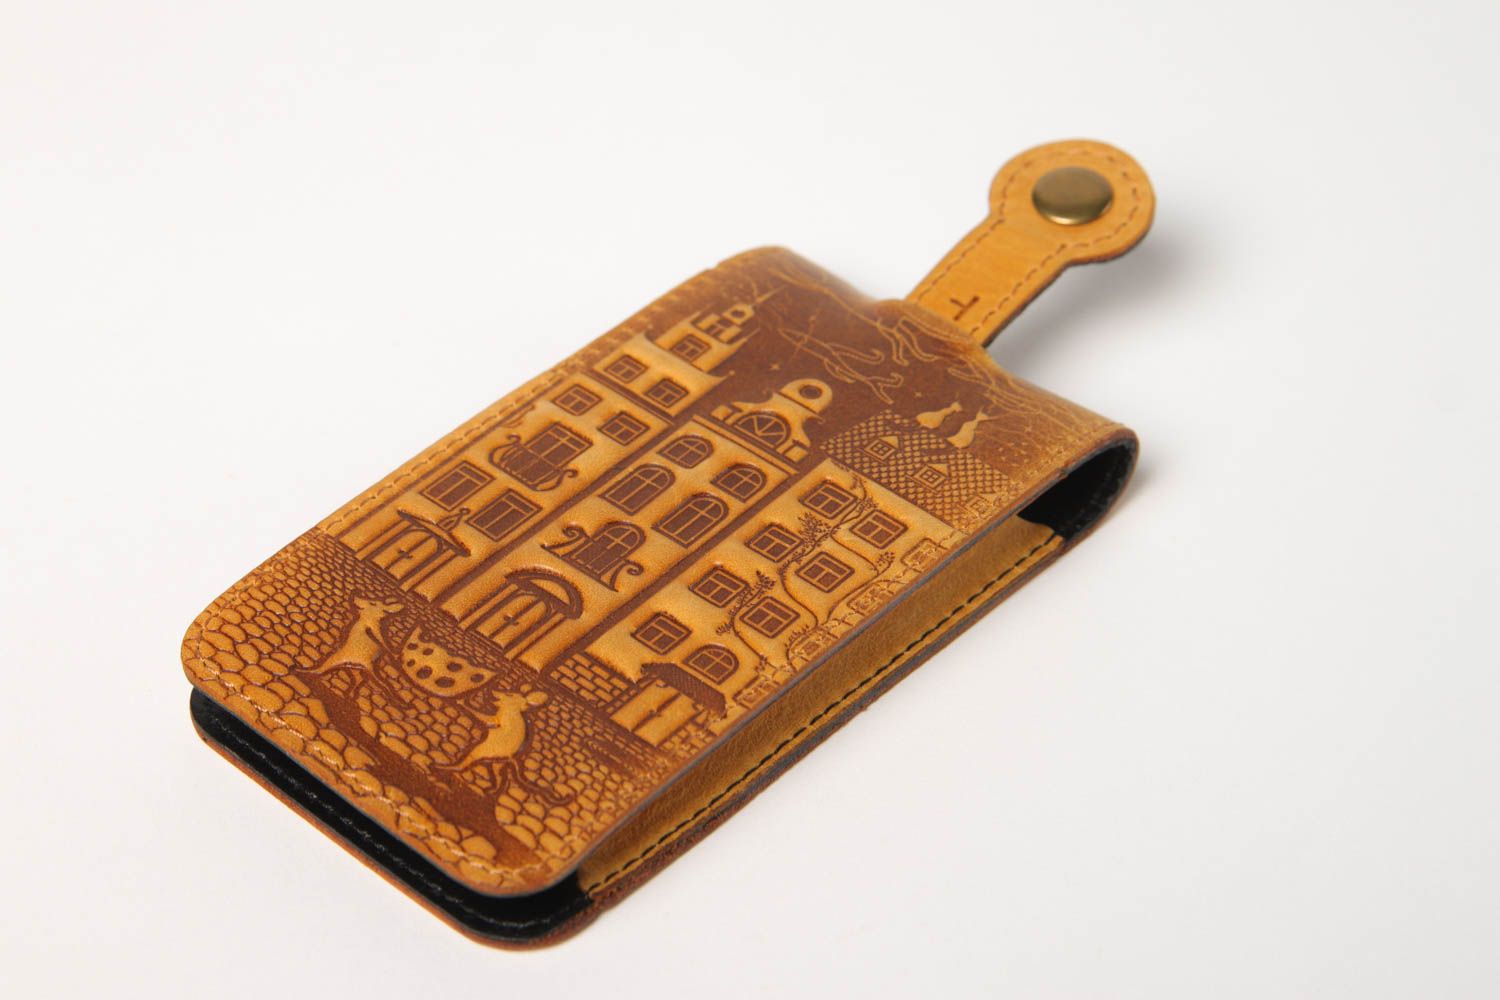 Unusual handmade leather key purse stylish key holder leather goods gift ideas photo 2